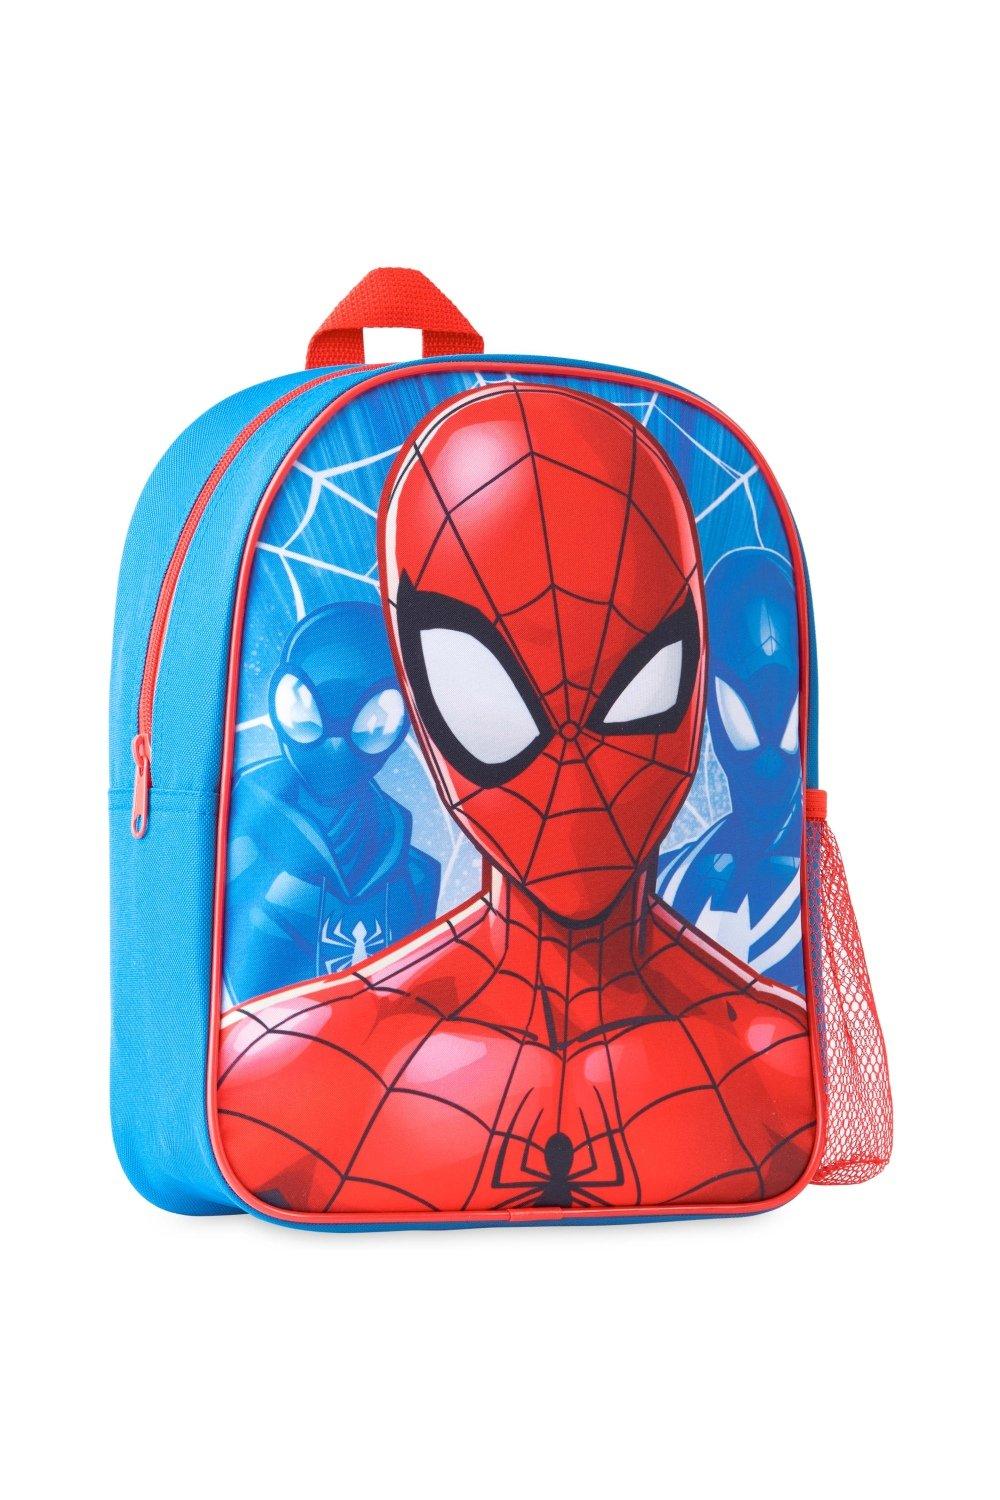 Школьный рюкзак Человека-паука Marvel, мультиколор рюкзак унисекс последний из сша для подростков школьные ранцы для мальчиков и девочек рюкзак для ноутбука дорожный ранец